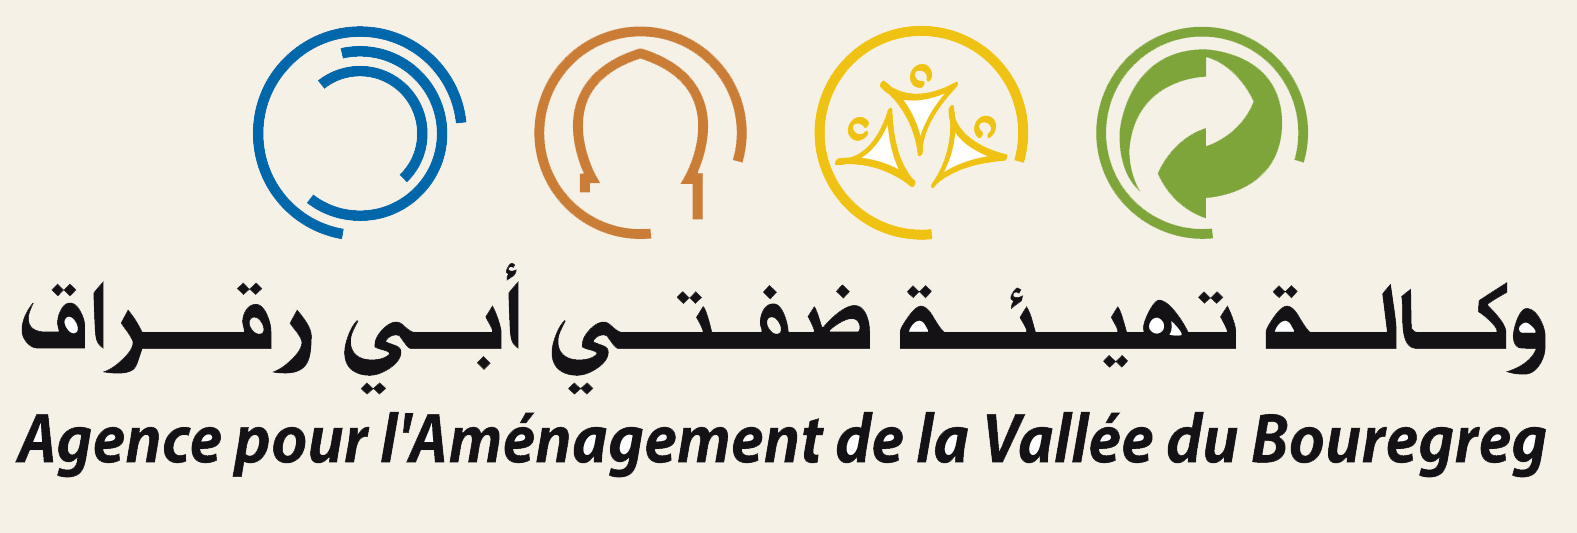  Agence pour le Développement de la Vallée du Bouregreg